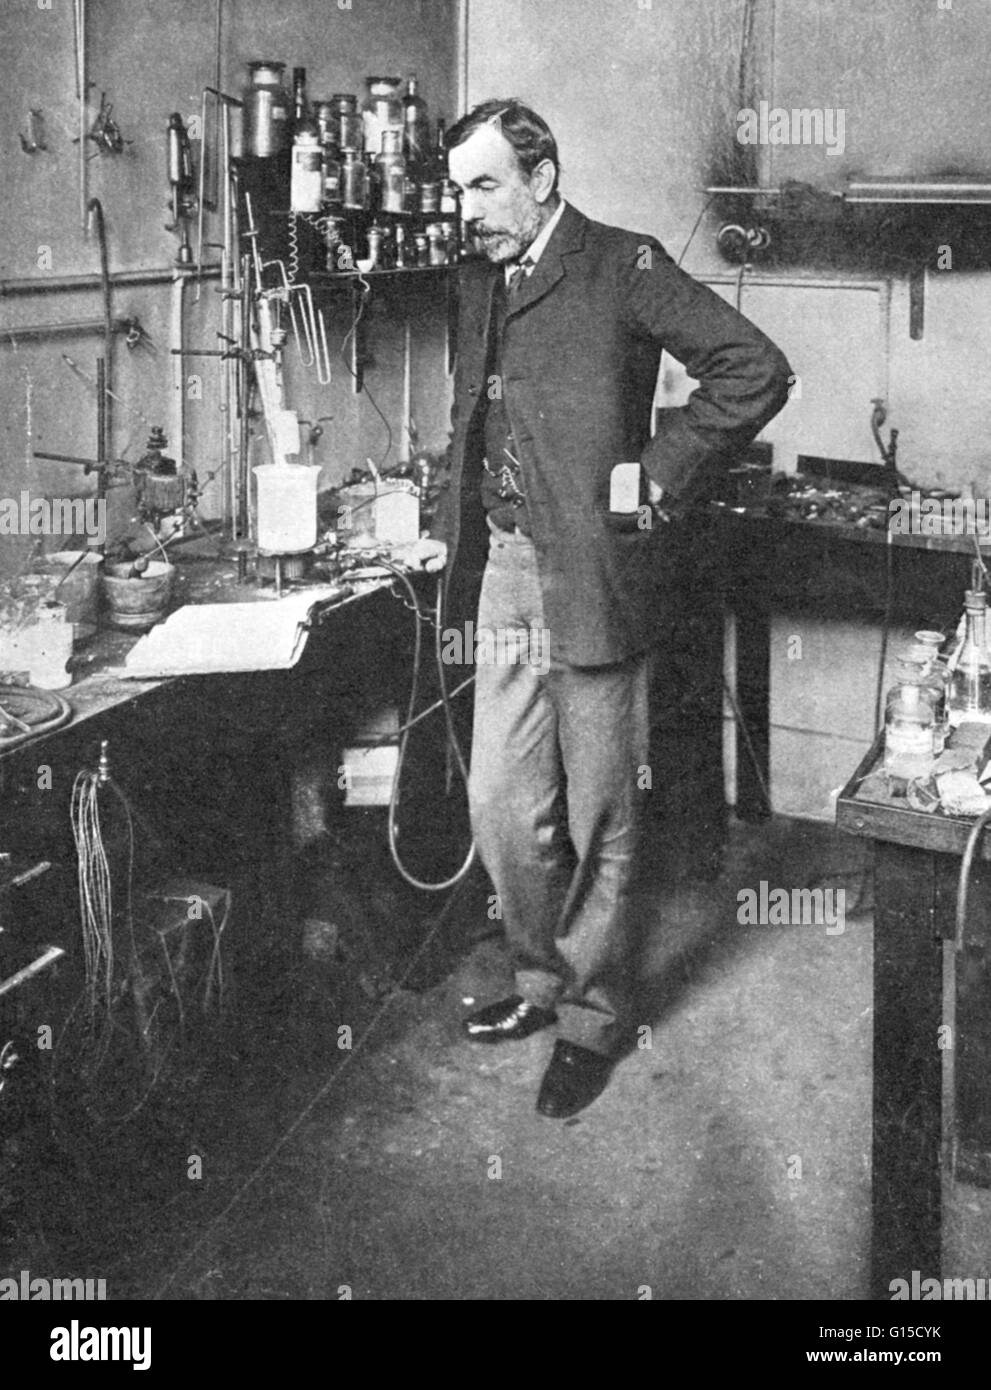 William Ramsay (2 octobre 1852 - 23 juillet 1916) était un chimiste écossais. Il a étudié en Allemagne en vertu de Bunsen, d'obtenir son doctorat en 1873. Après des années d'enseignement, il a commencé des recherches sur l'azote en 1892. L'azote puisé dans l'air a été montré pour être heav Banque D'Images